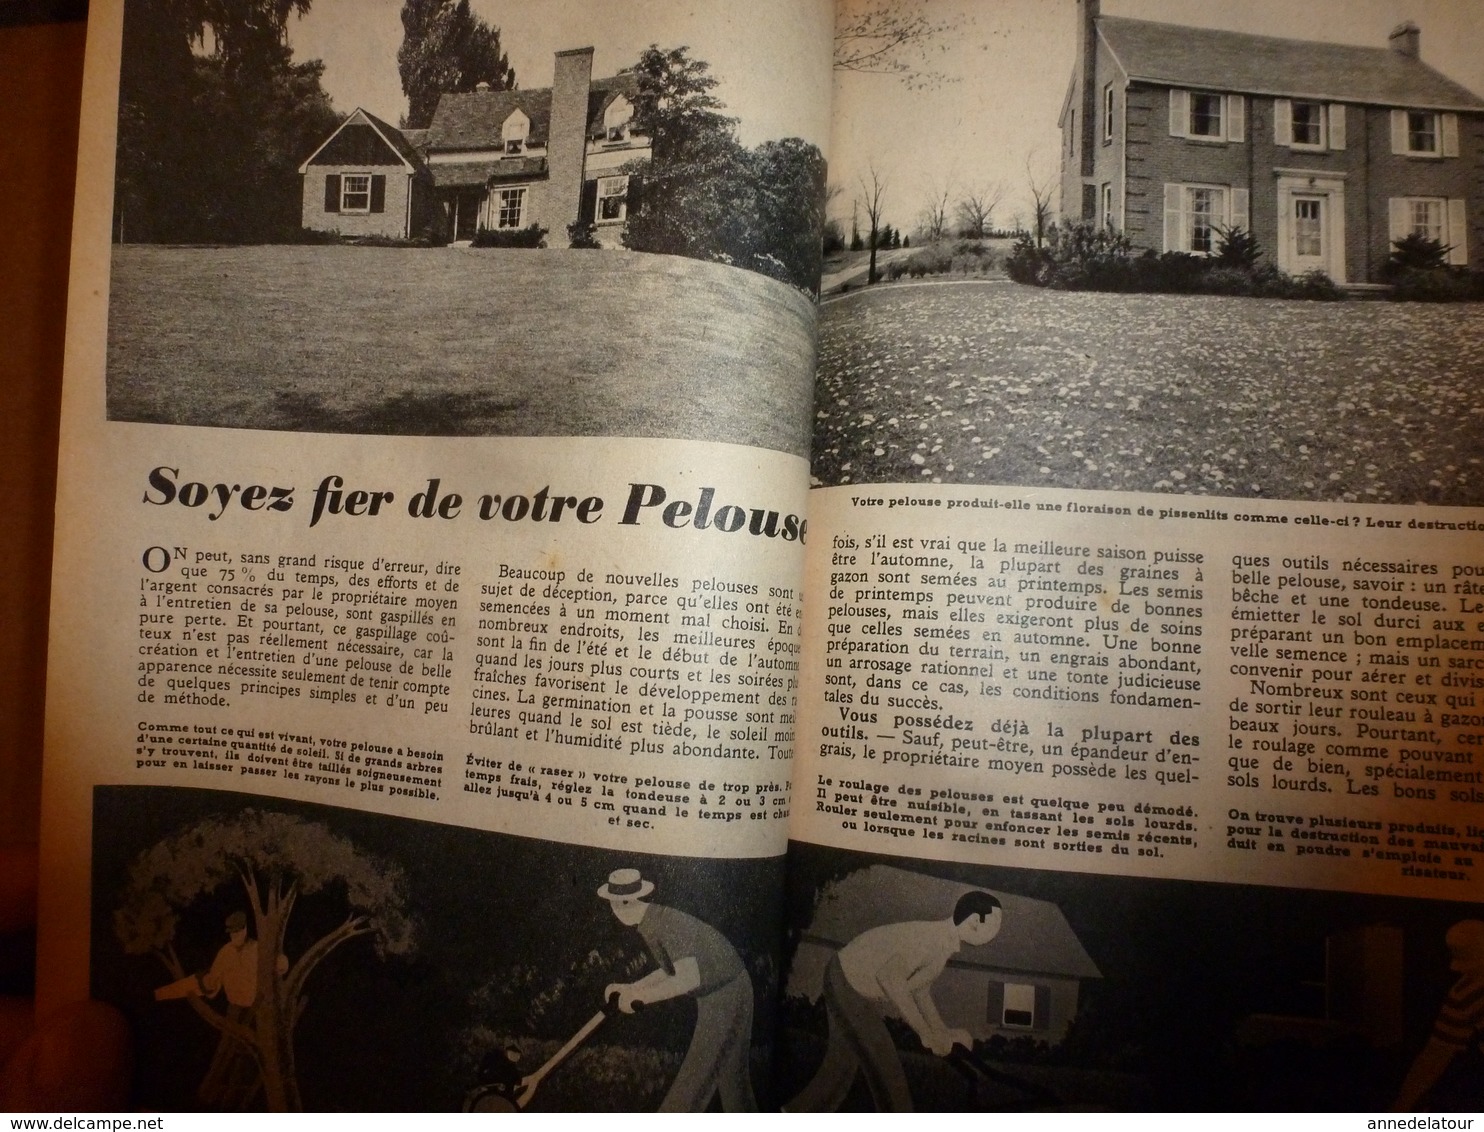 1951 MÉCANIQUE POPULAIRE: Construire sa maison en contre-plaqué (2e partie);Pour avoir une belle pelouse;Rejointoyer;etc